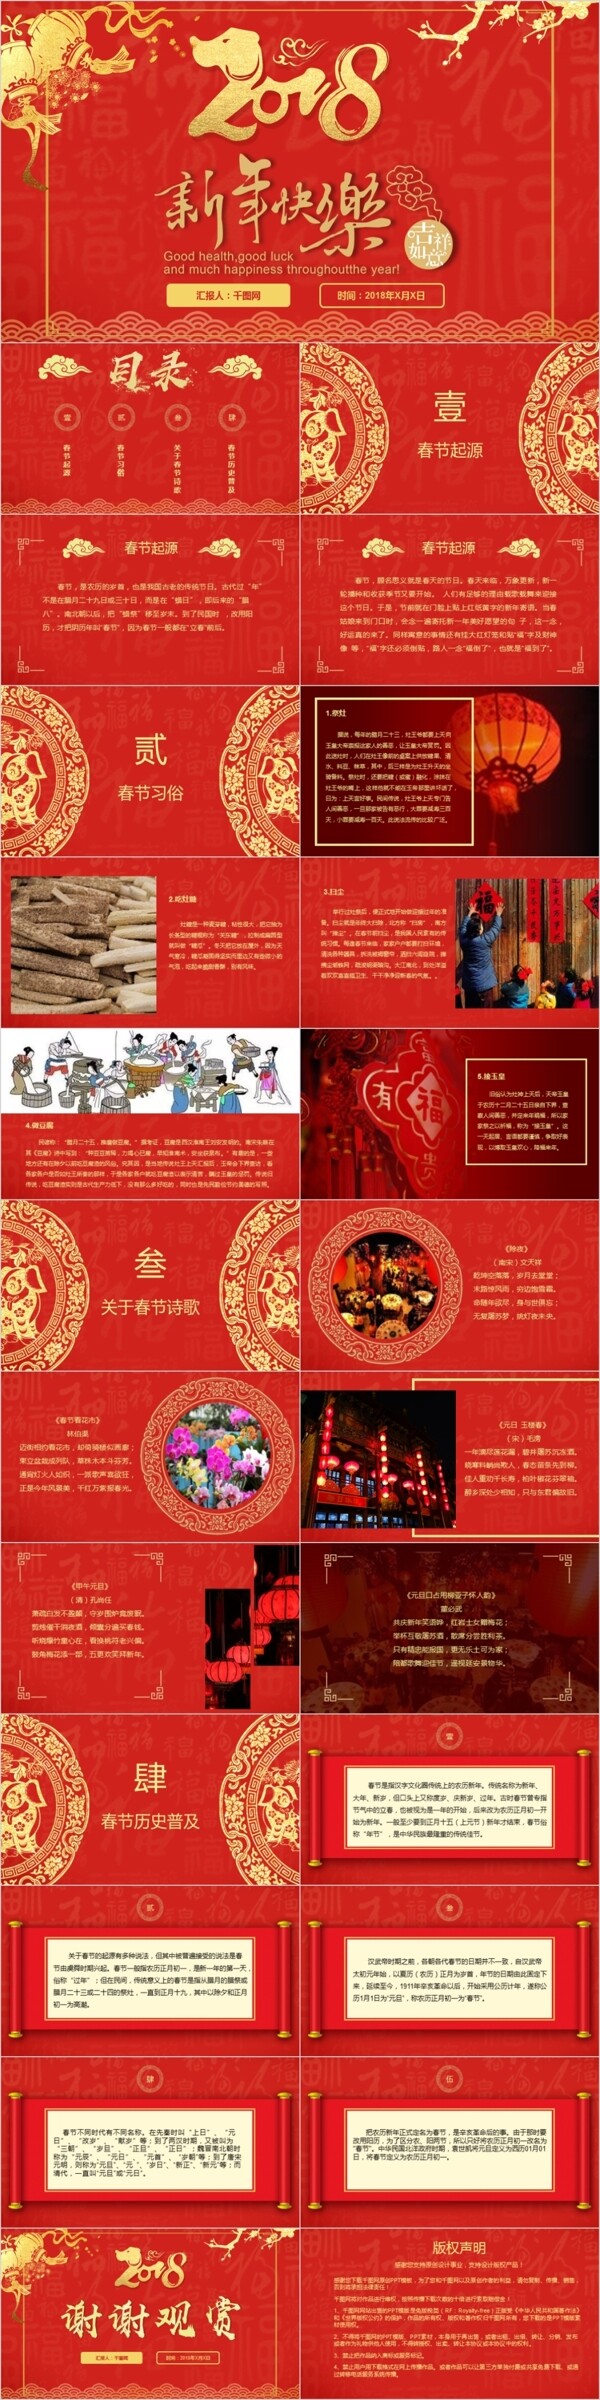 2018喜庆红色春节节日介绍传统文化普及宣传公益PPT庆典